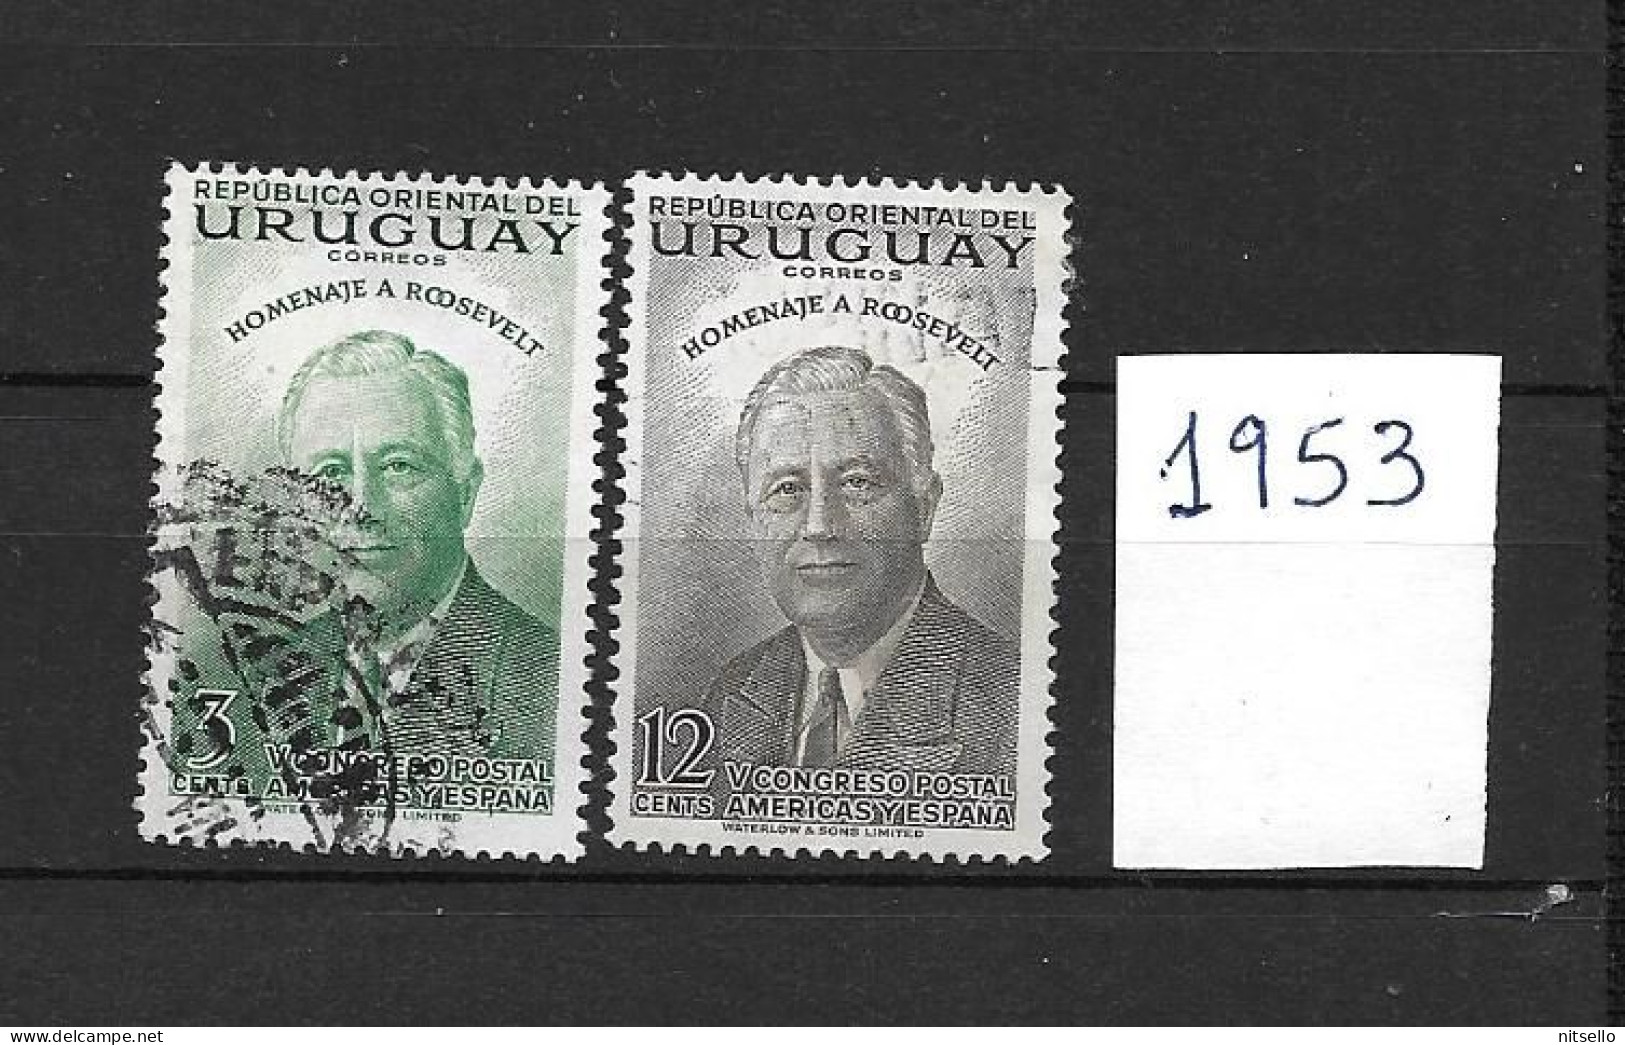 LOTE 1877   ///   URUGUAY  SELLOS DE 1951  A BAJO PRECIO  ¡¡¡ LIQUIDATION - JE LIQUIDE - ANGEBOT !!! - Uruguay